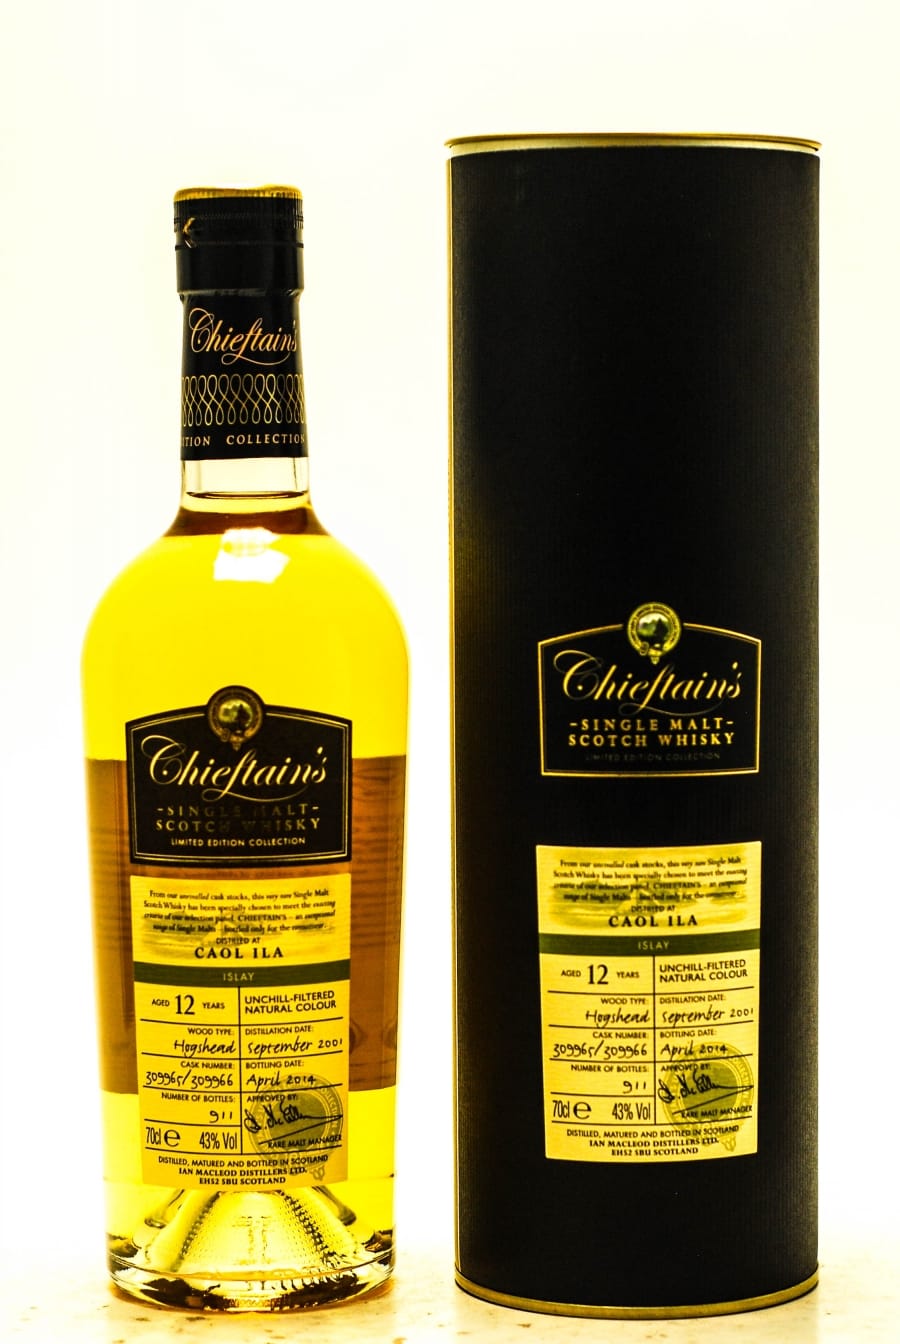 Caol Ila - Caol Ila 12 YO Chieftains Distilled: 09.2001 Bottled: 04.2014 Cask: 309965/309966 1 Of 911 Bottles 43% 2001